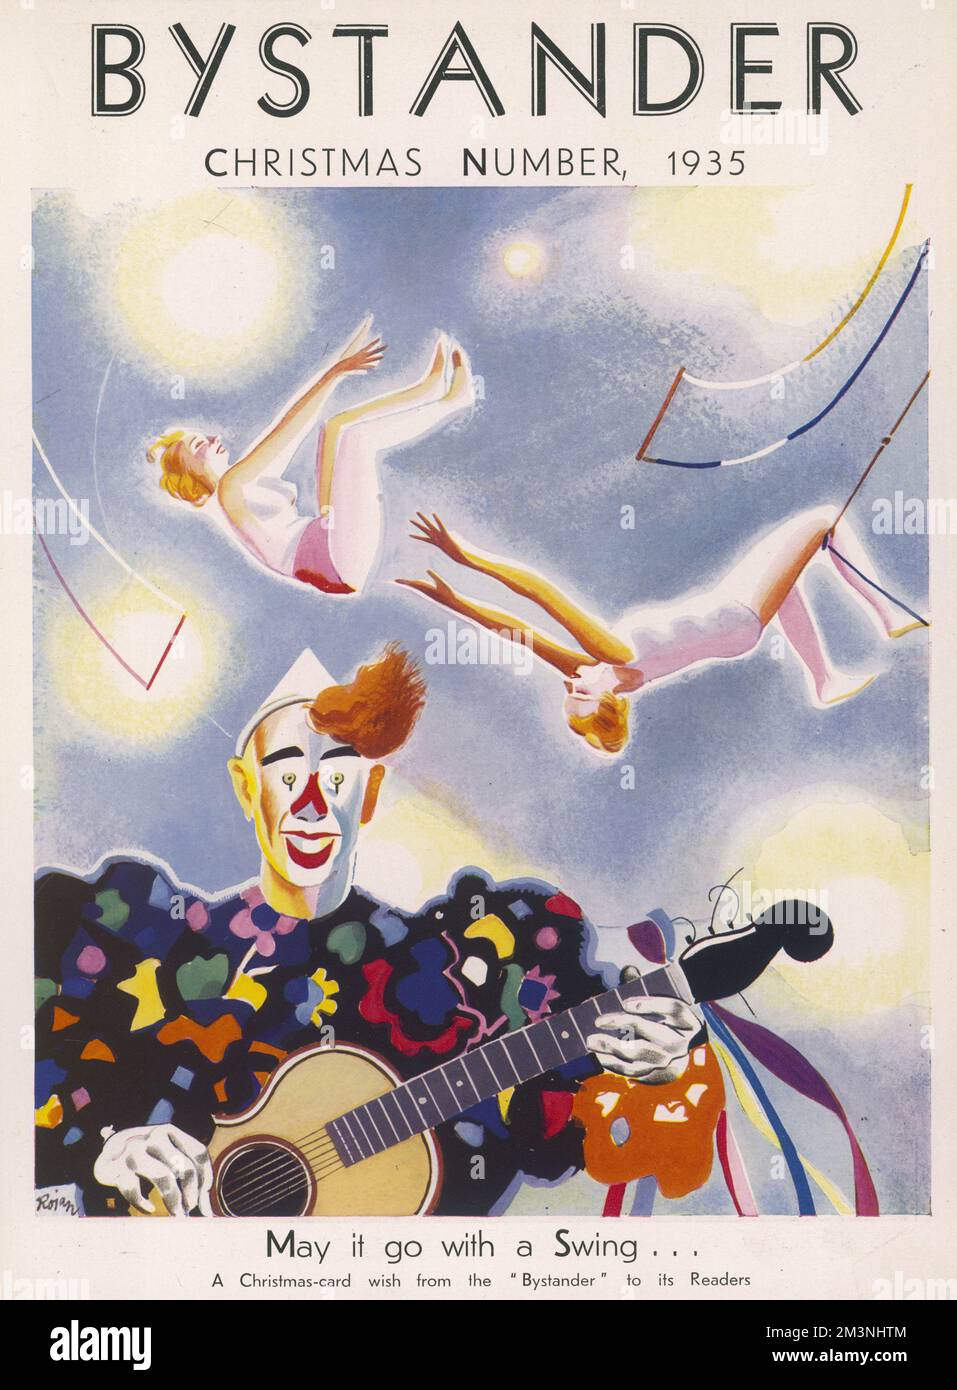 Eine Weihnachtskarte auf dem Deckblatt des Zuschauers mit einer Illustration einer Zirkusszene mit einer Gitarre, die im Vordergrund Clown spielt, und weiblichen Akrobaten, die vom Trapez oben schwingen. Datum: 1935 Stockfoto